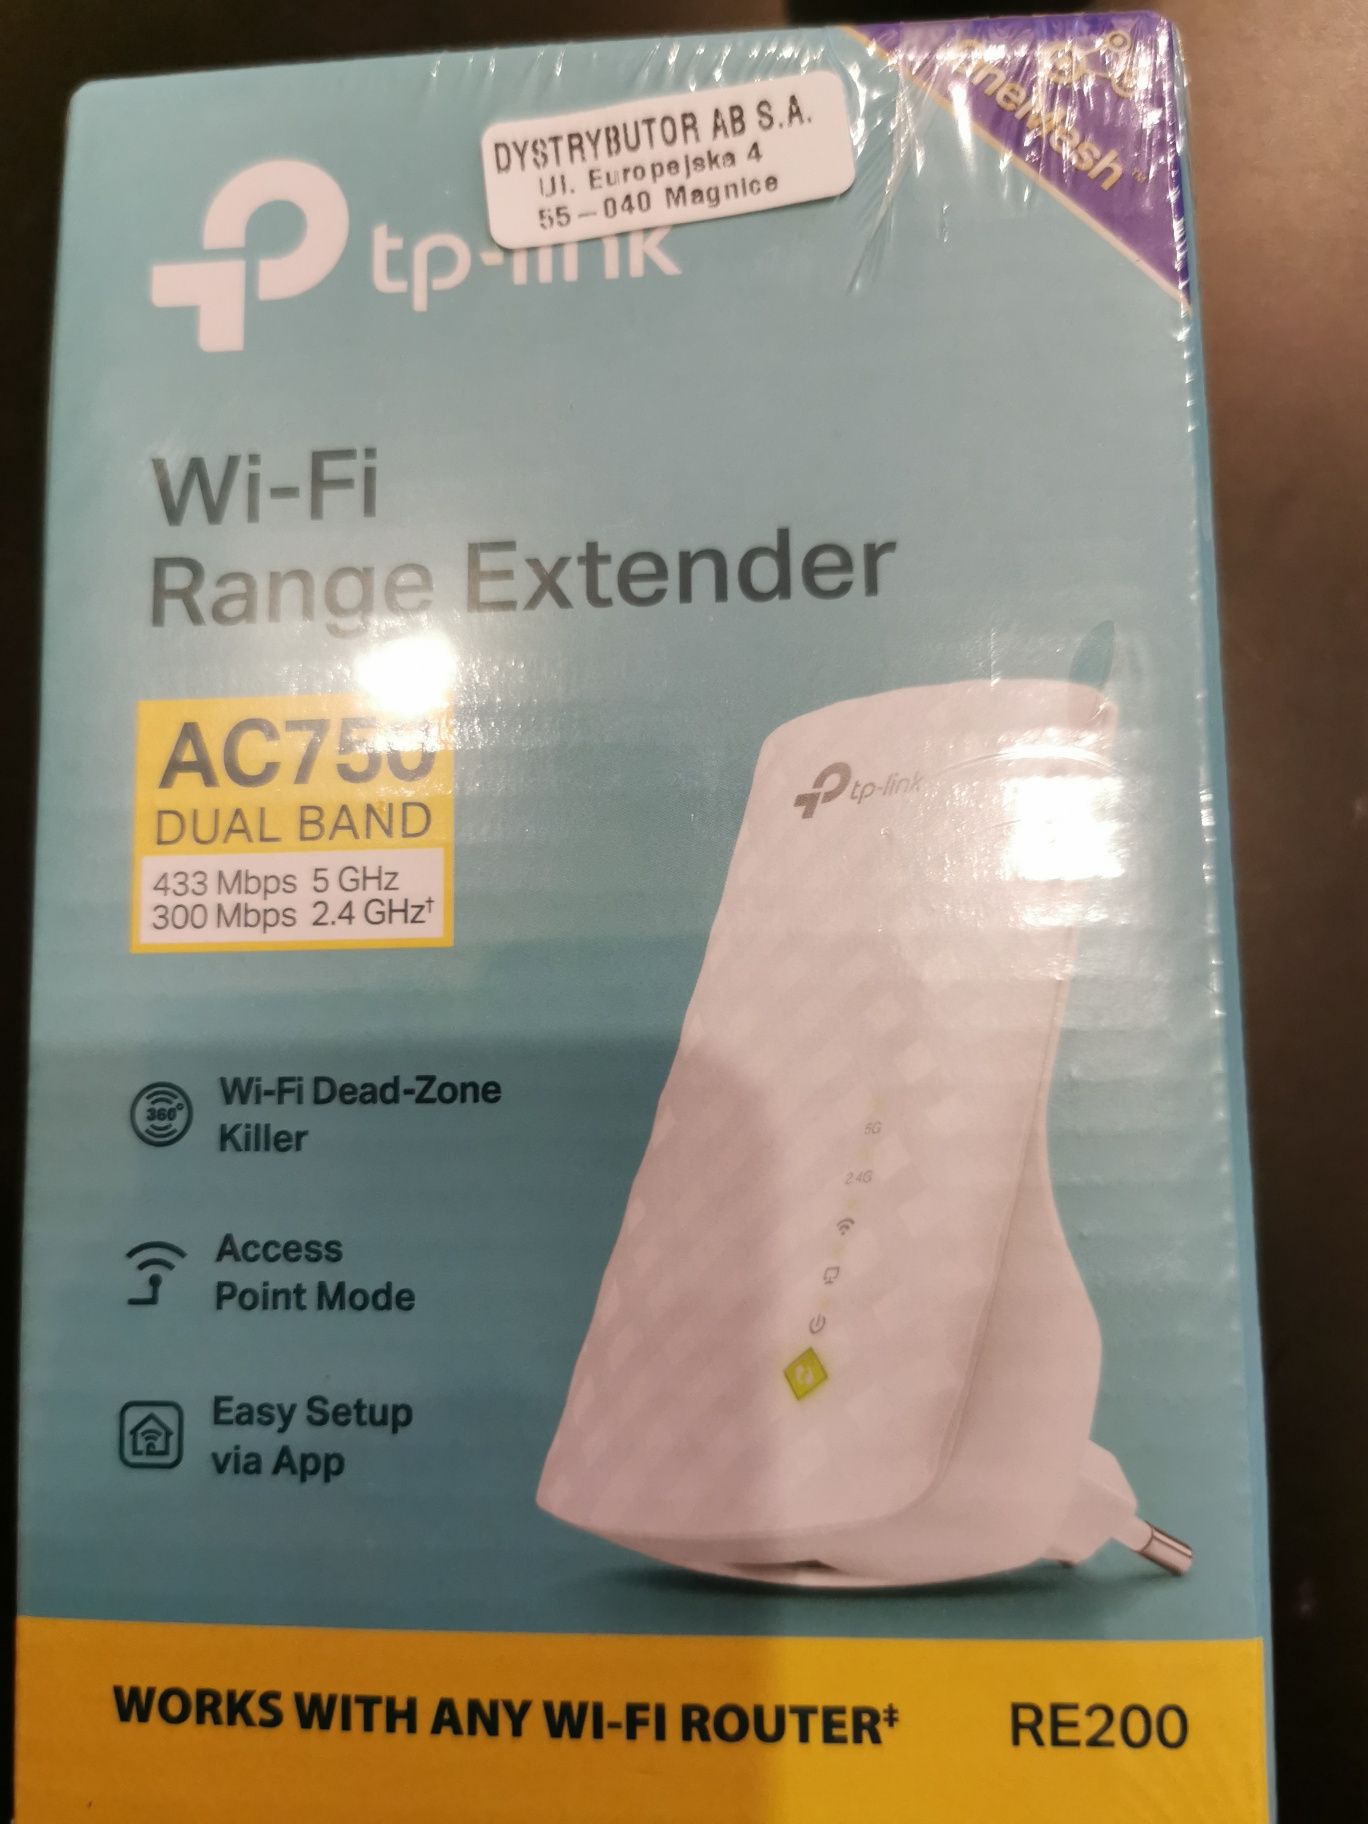 Sprzedam nowy wzmacniacz wifi firmy Tp-link AC750